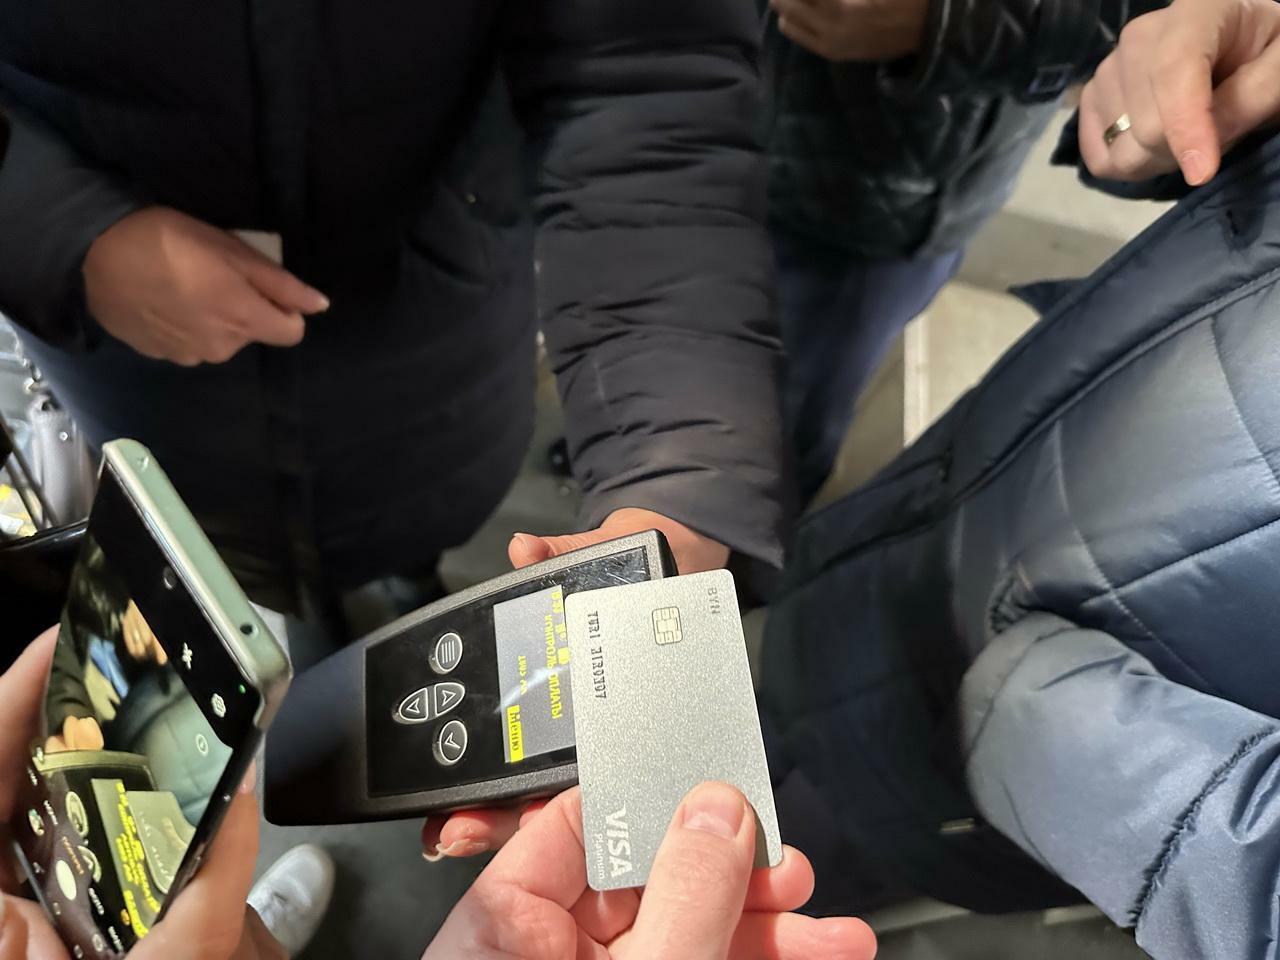 В Гомеле запустили оплату проезда банковской картой прямо в автобусе. Когда по всей стране?